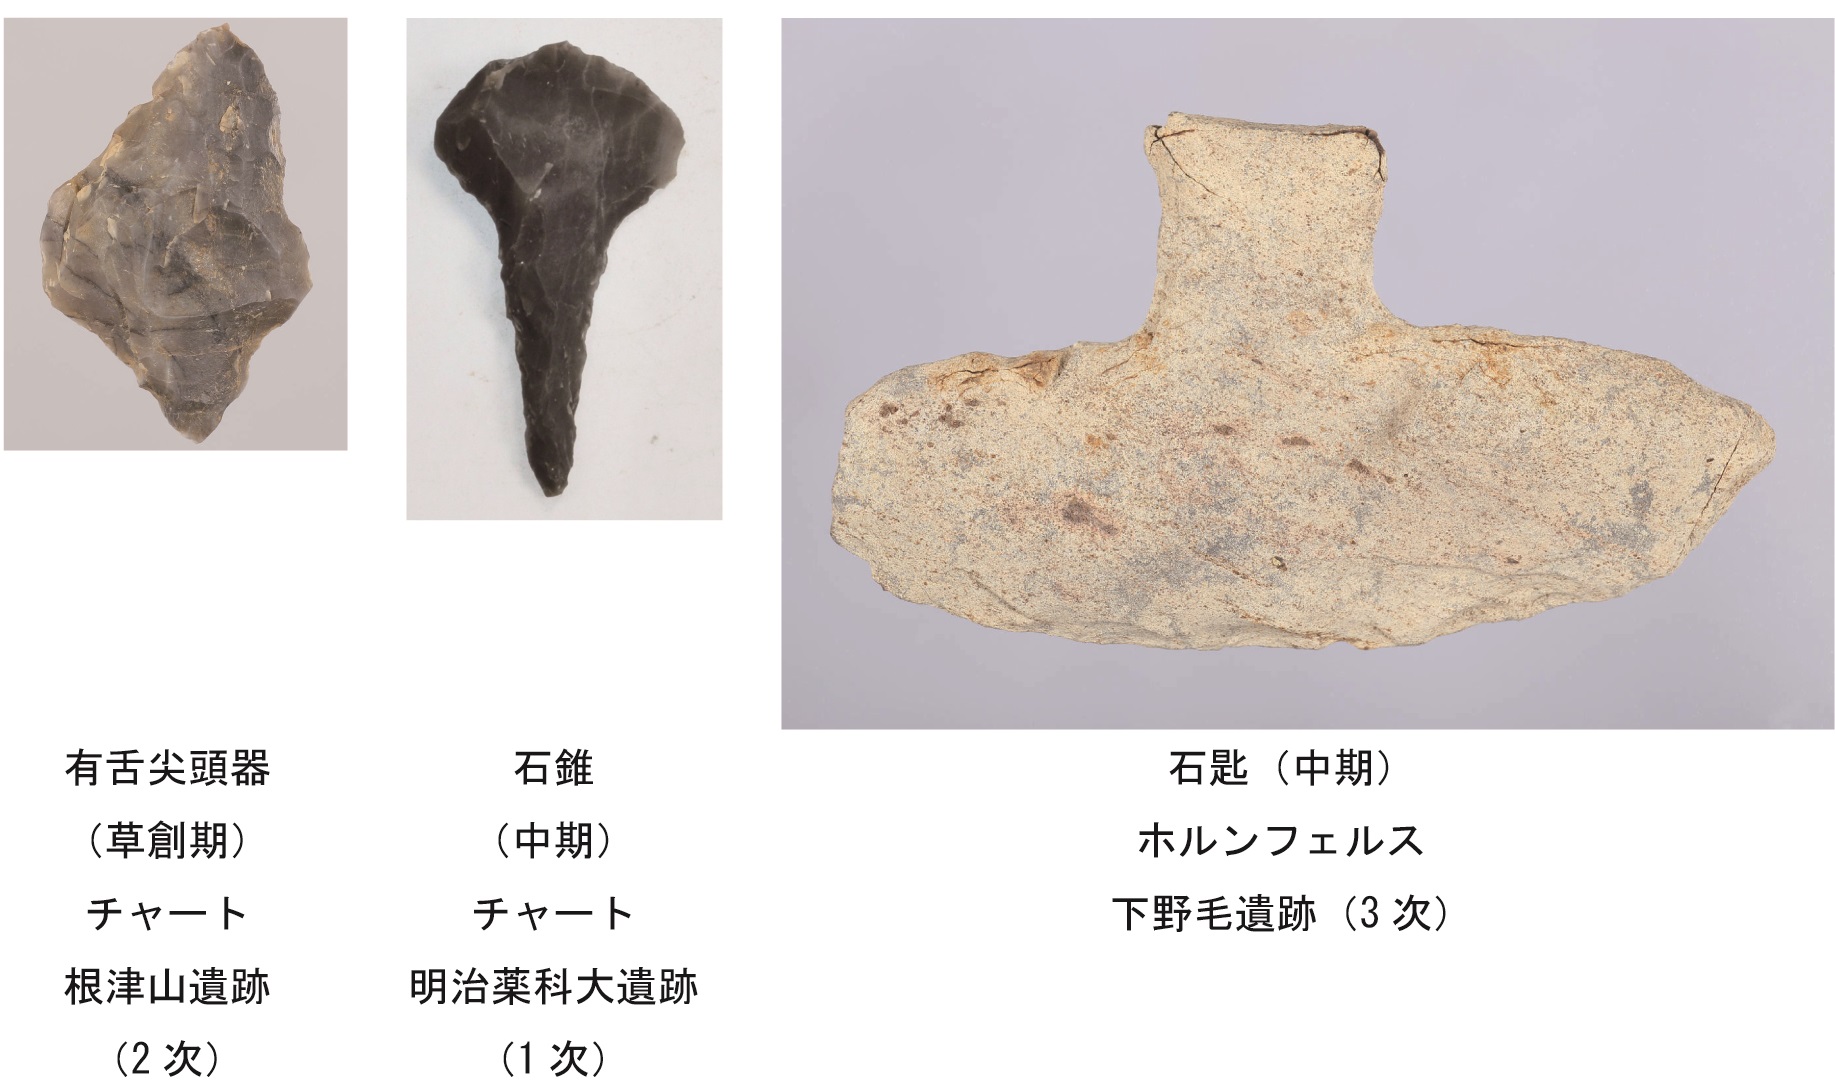 原始・古代】石器の移り変わり －世田谷の旧石器から古墳時代まで